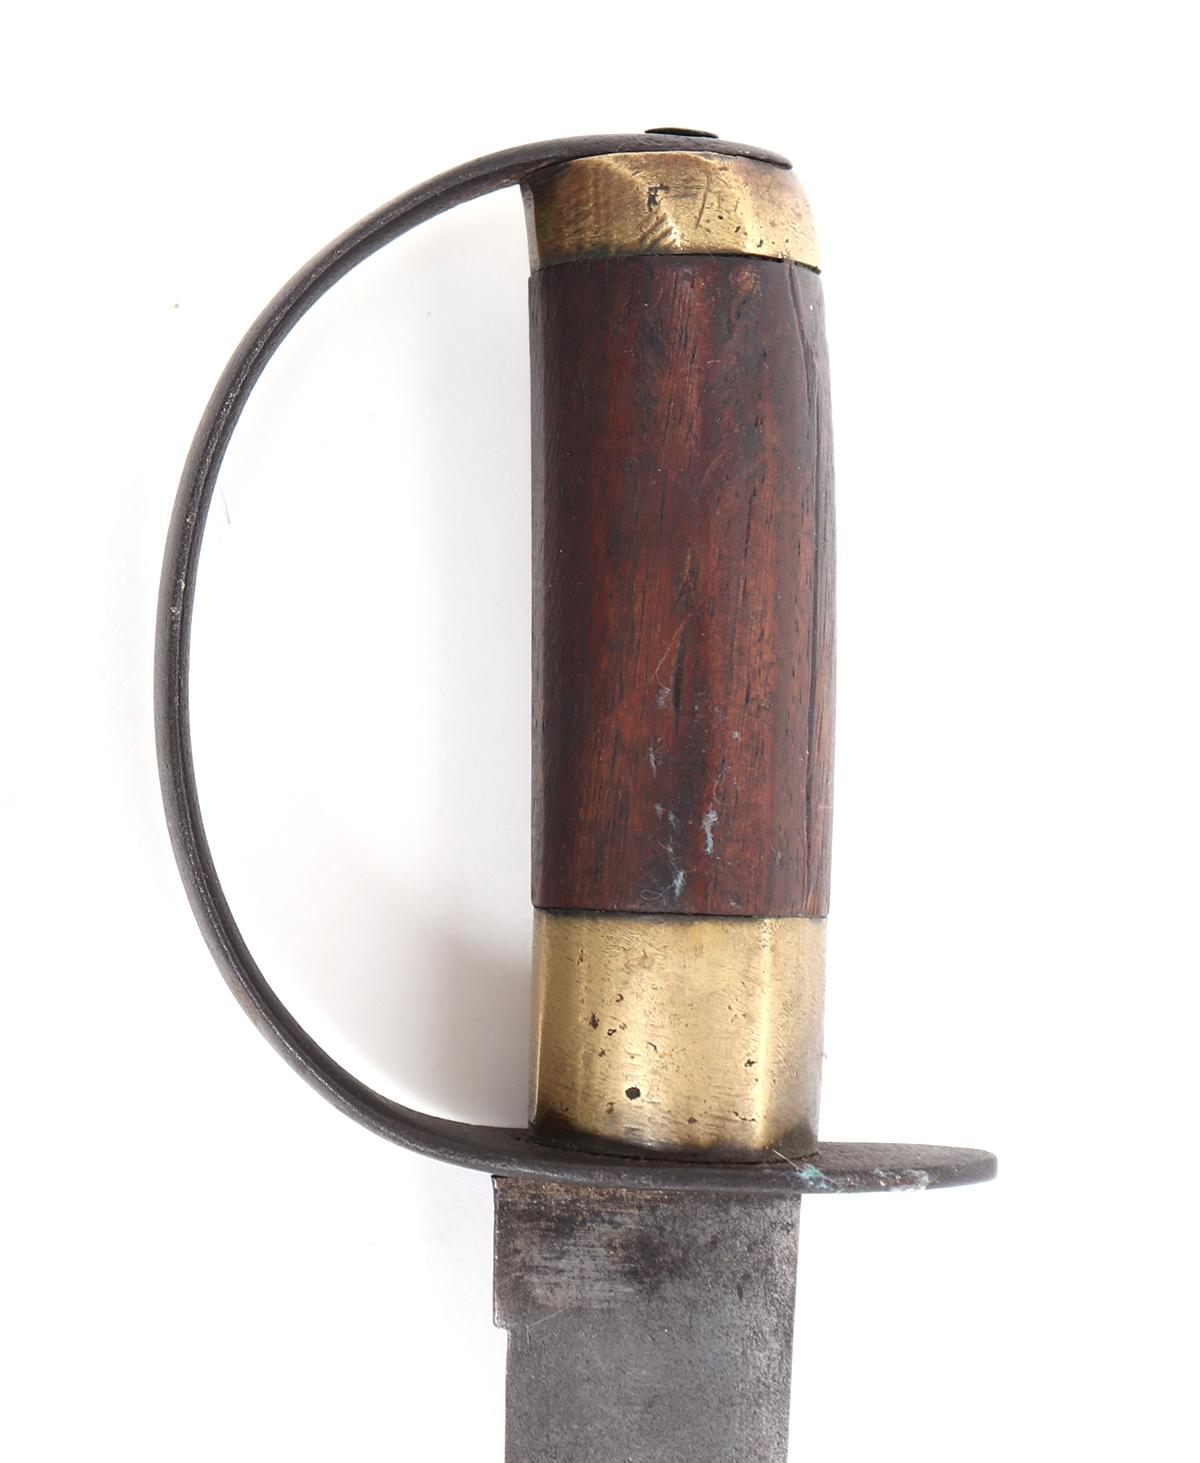 Rare Philippines Sword w/ Moro Scabbard